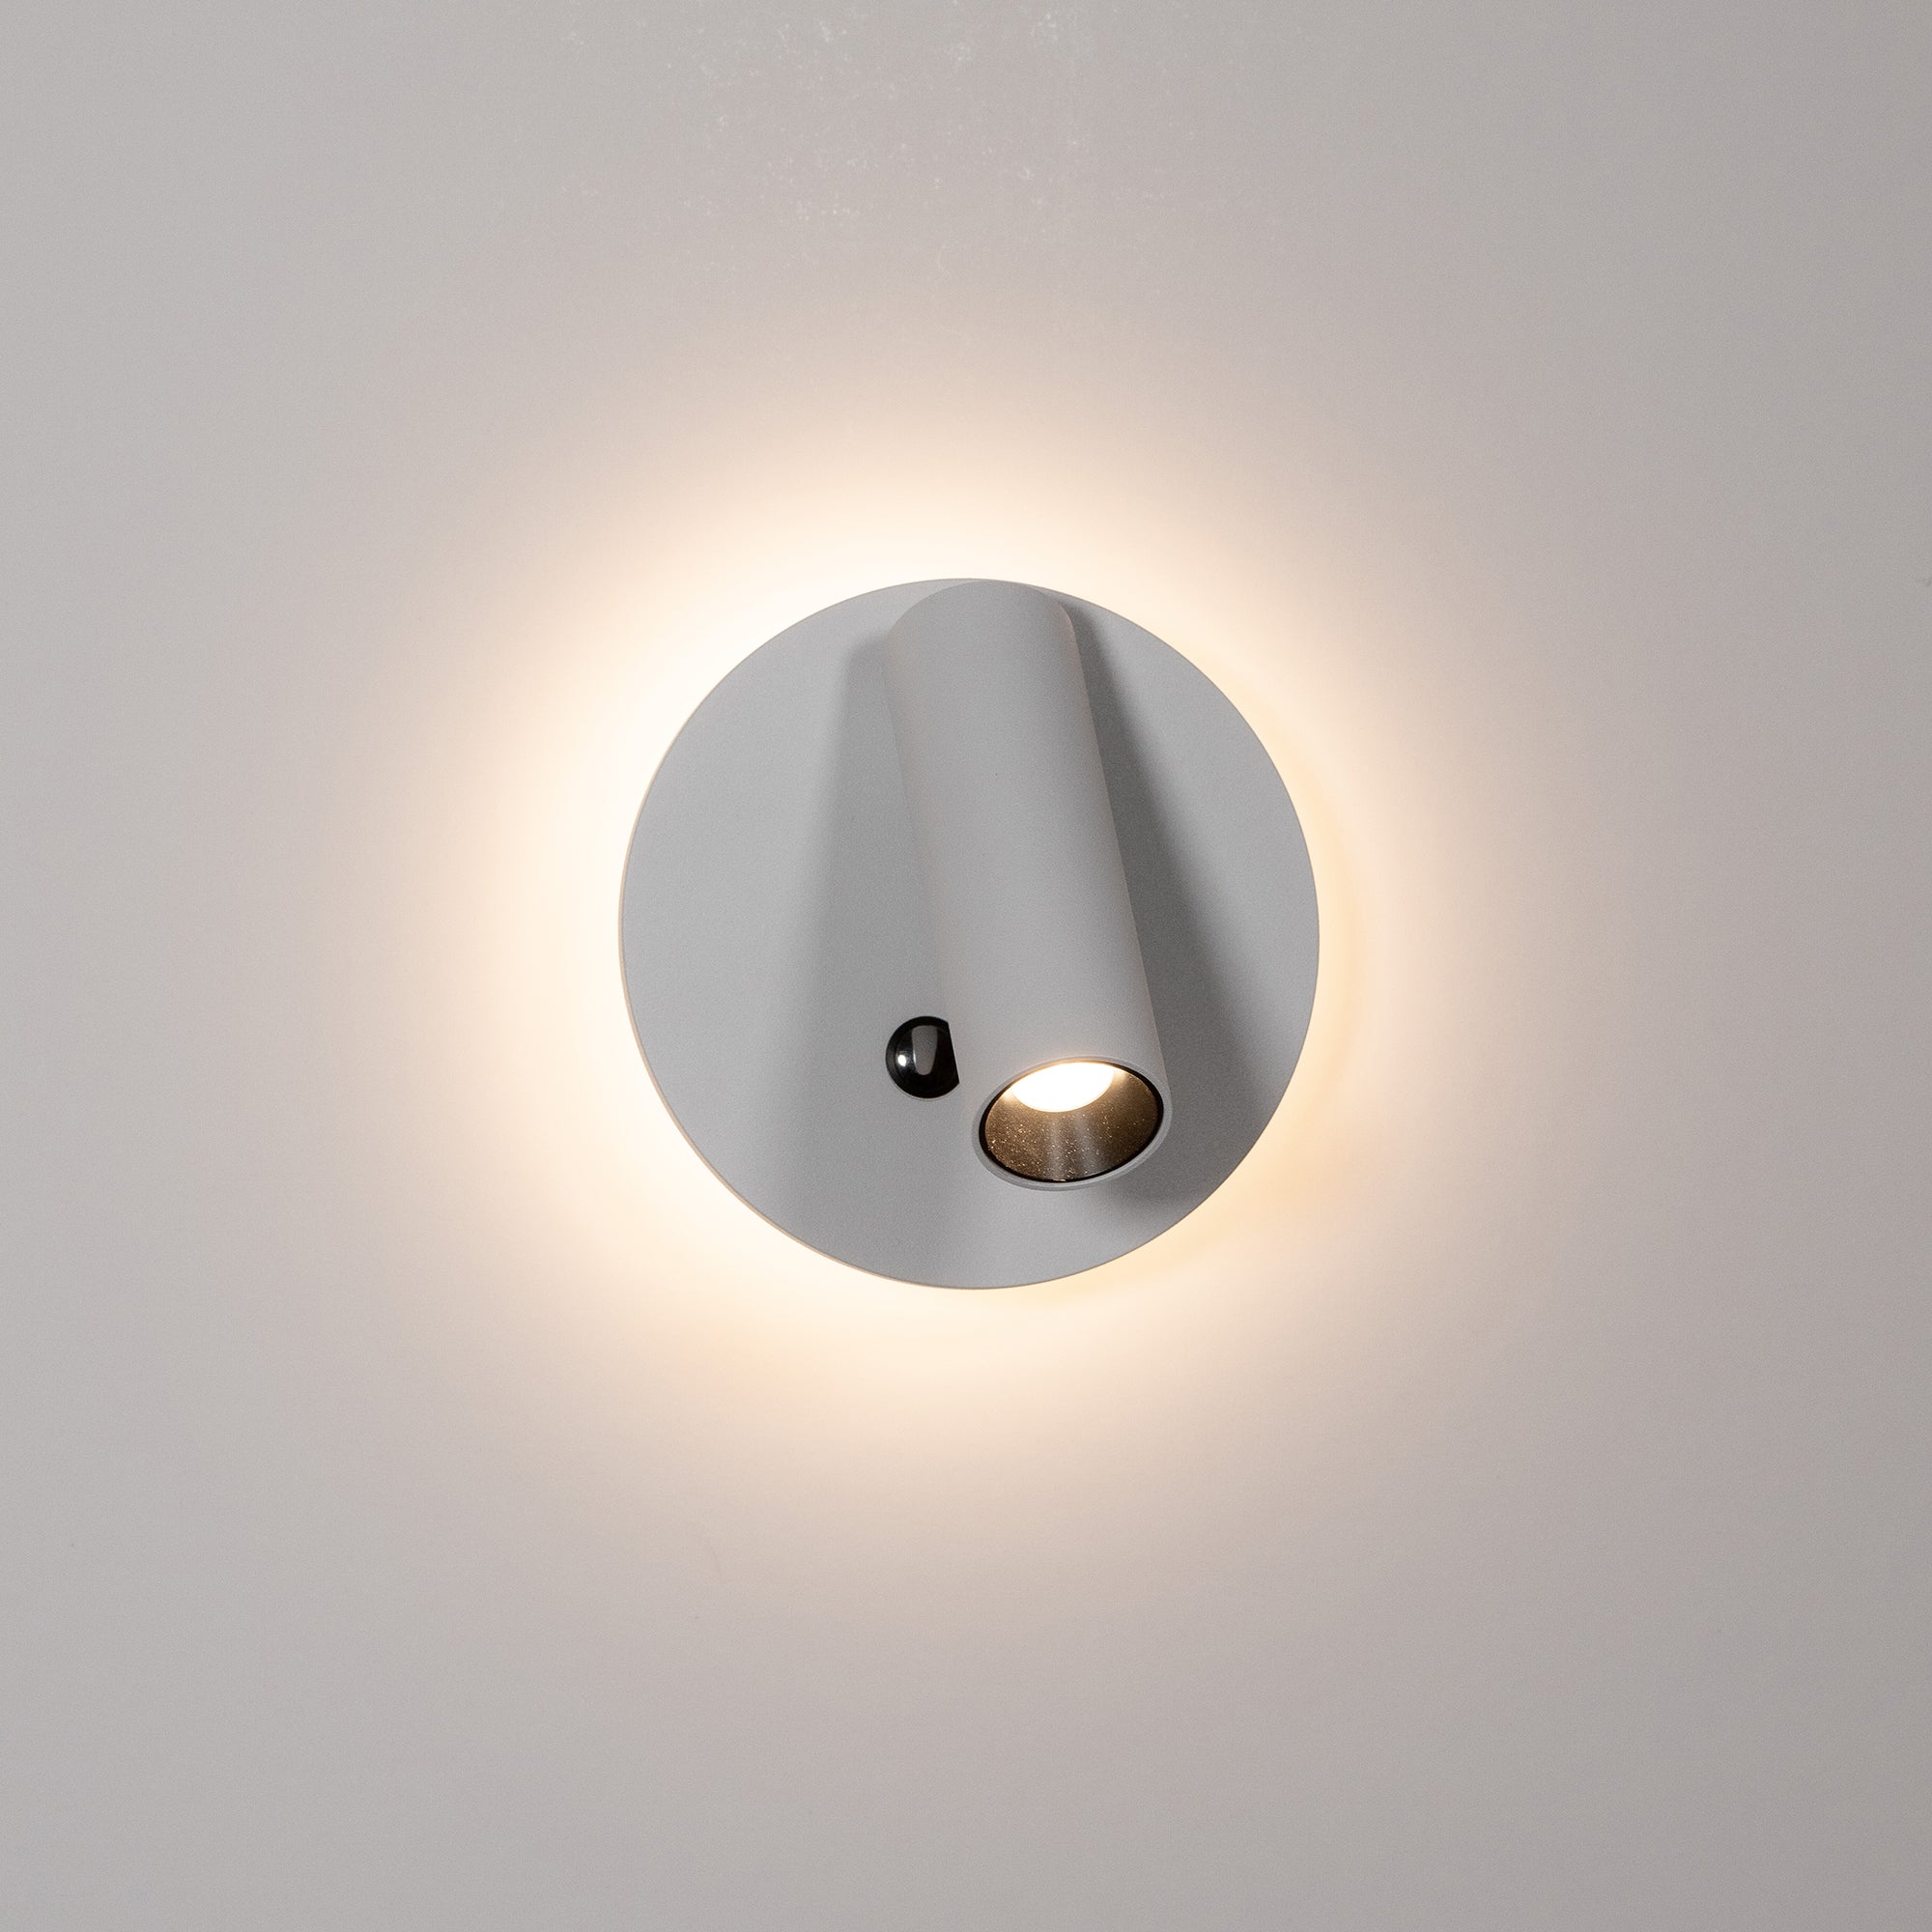 HV3688T-WHT - Lesen White Single Adjustable Wall Light with Back Light